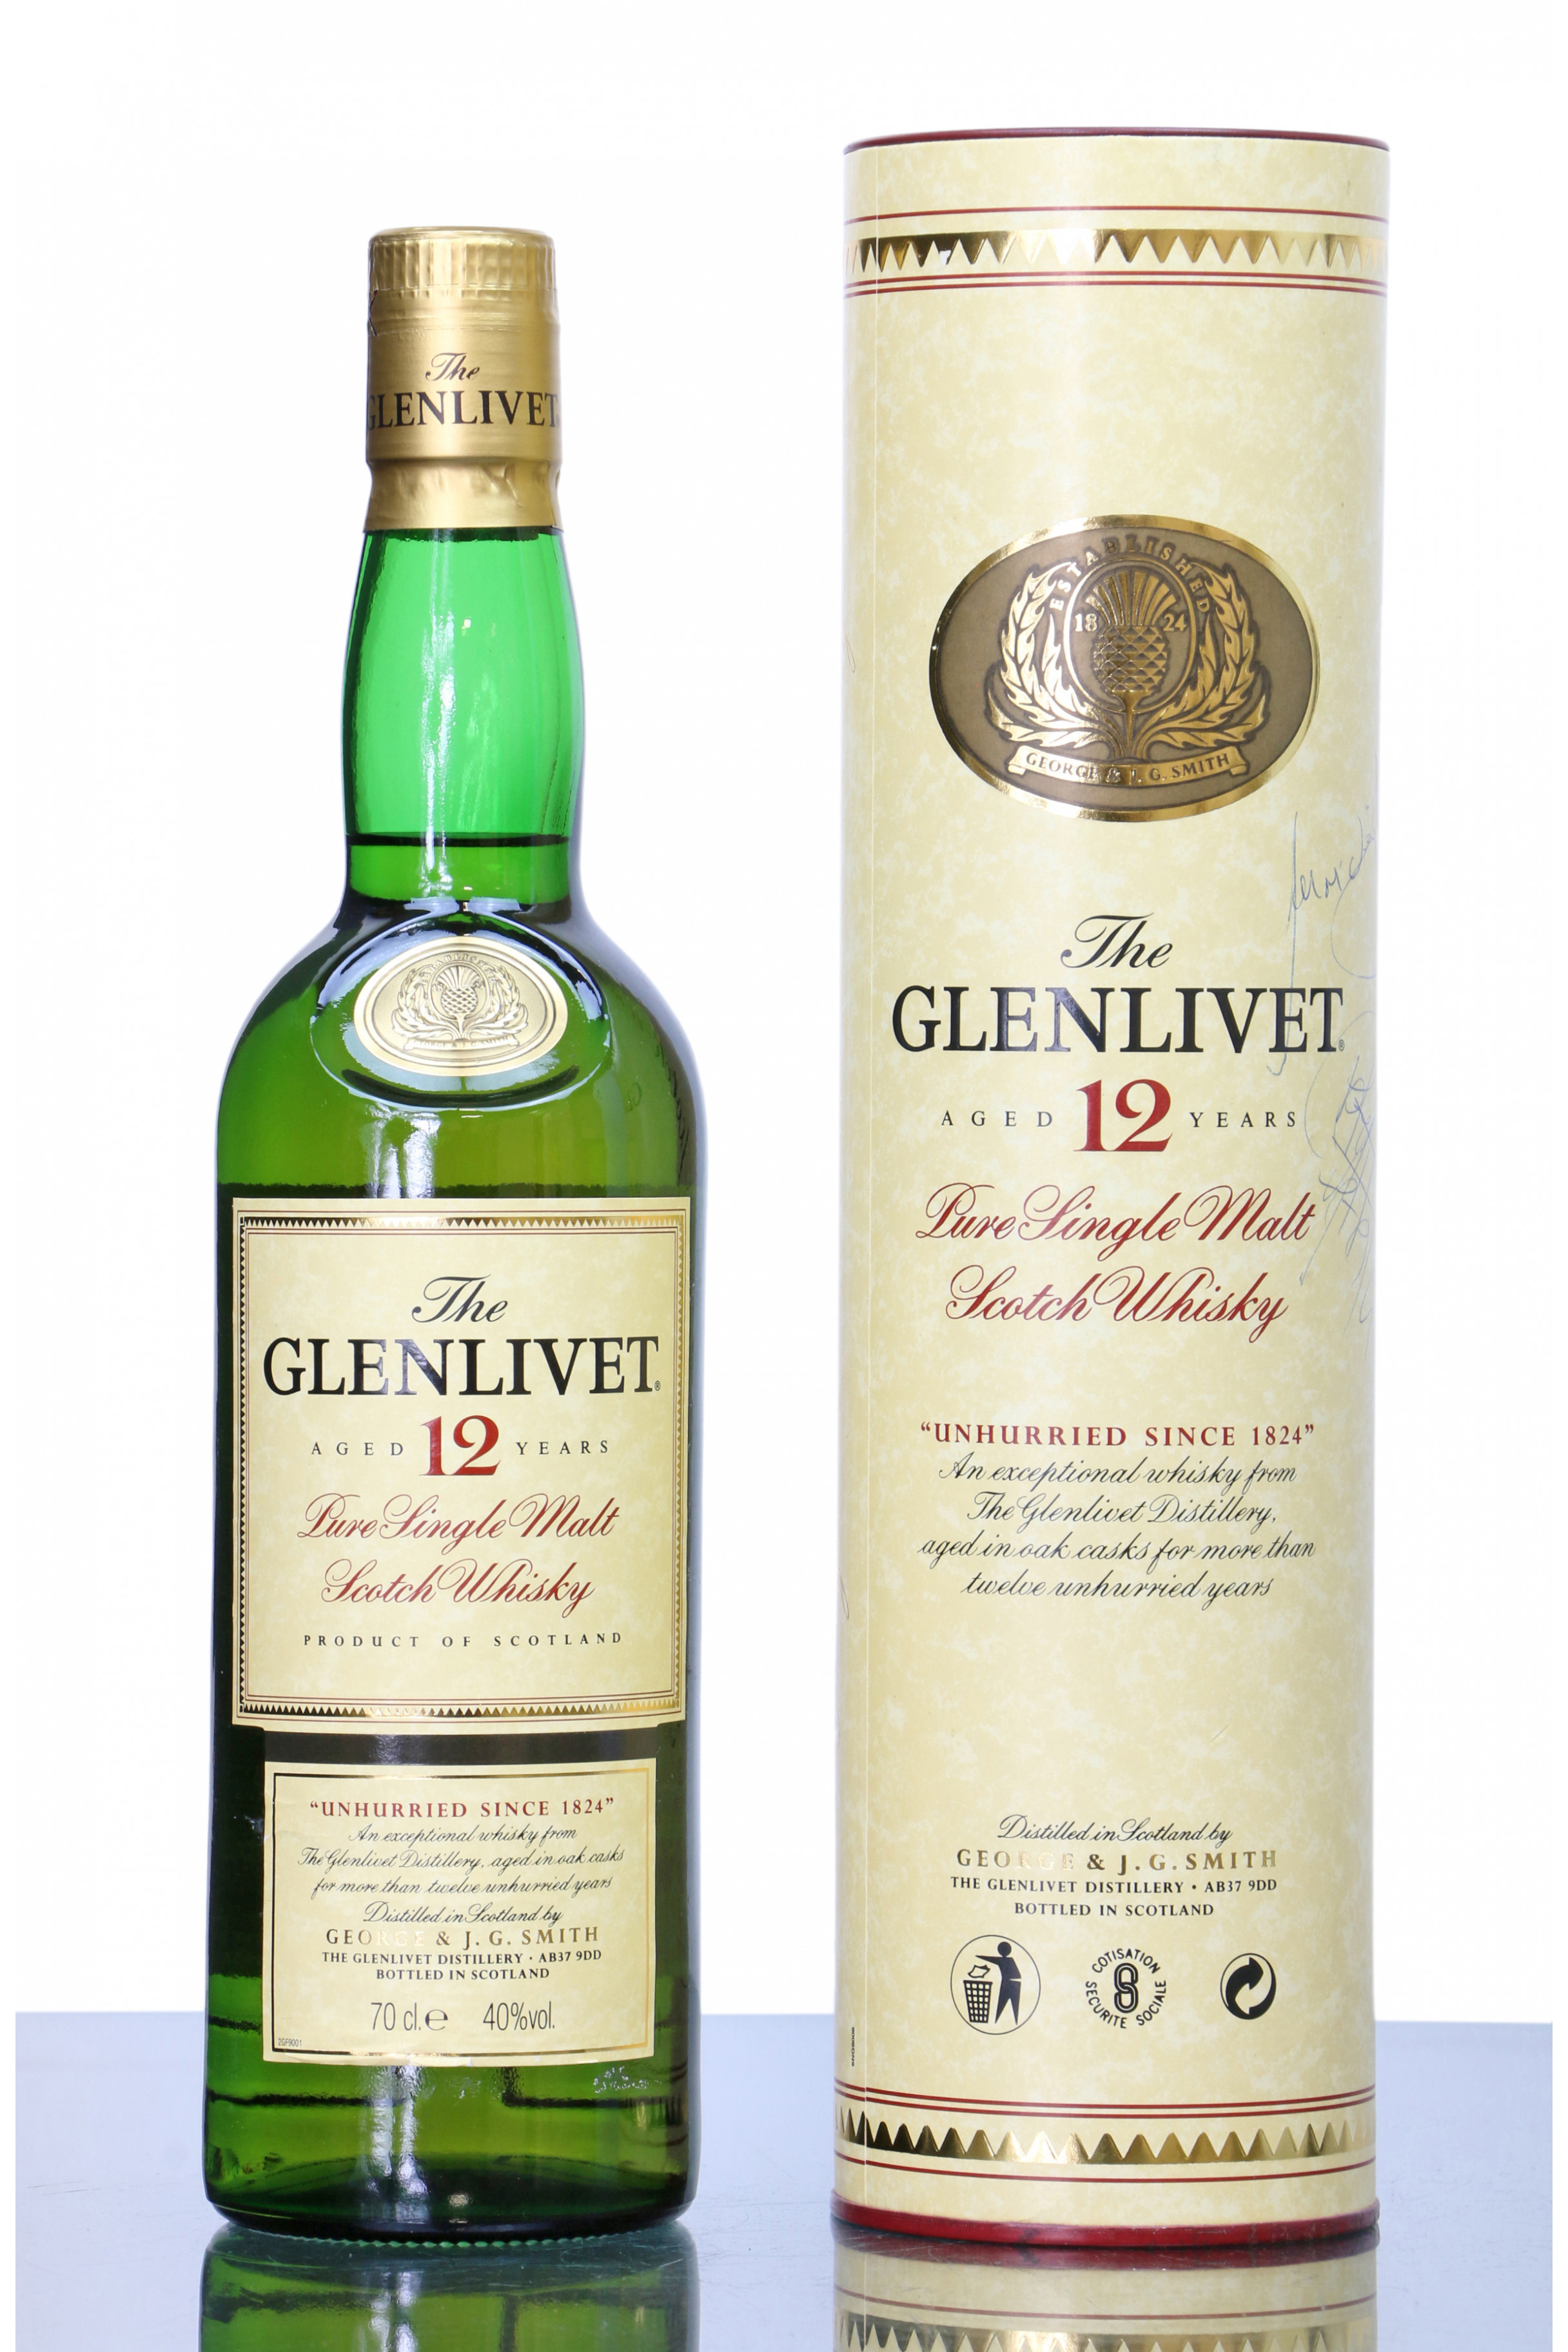 The glenlivet single malt scotch whisky price